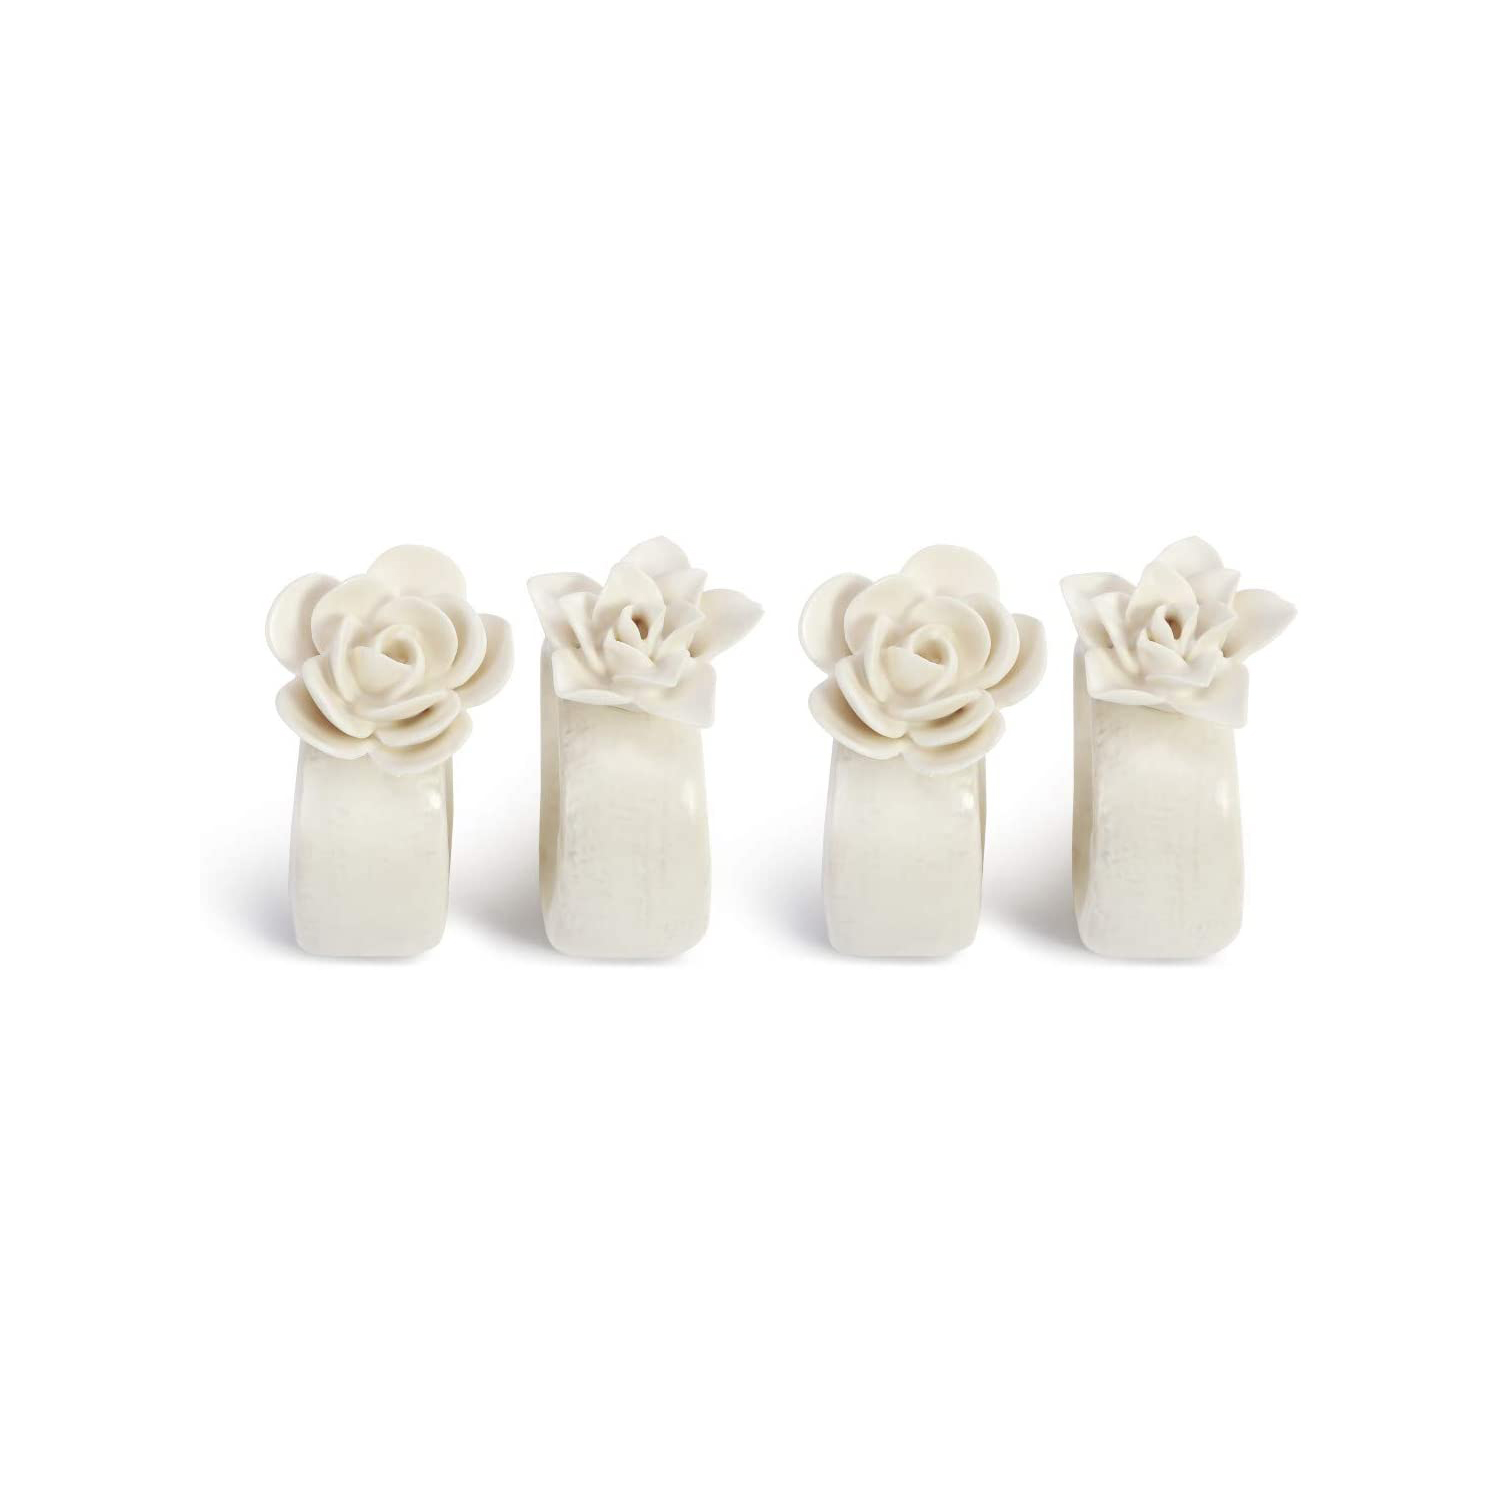 Flower Ceramic napkin rings